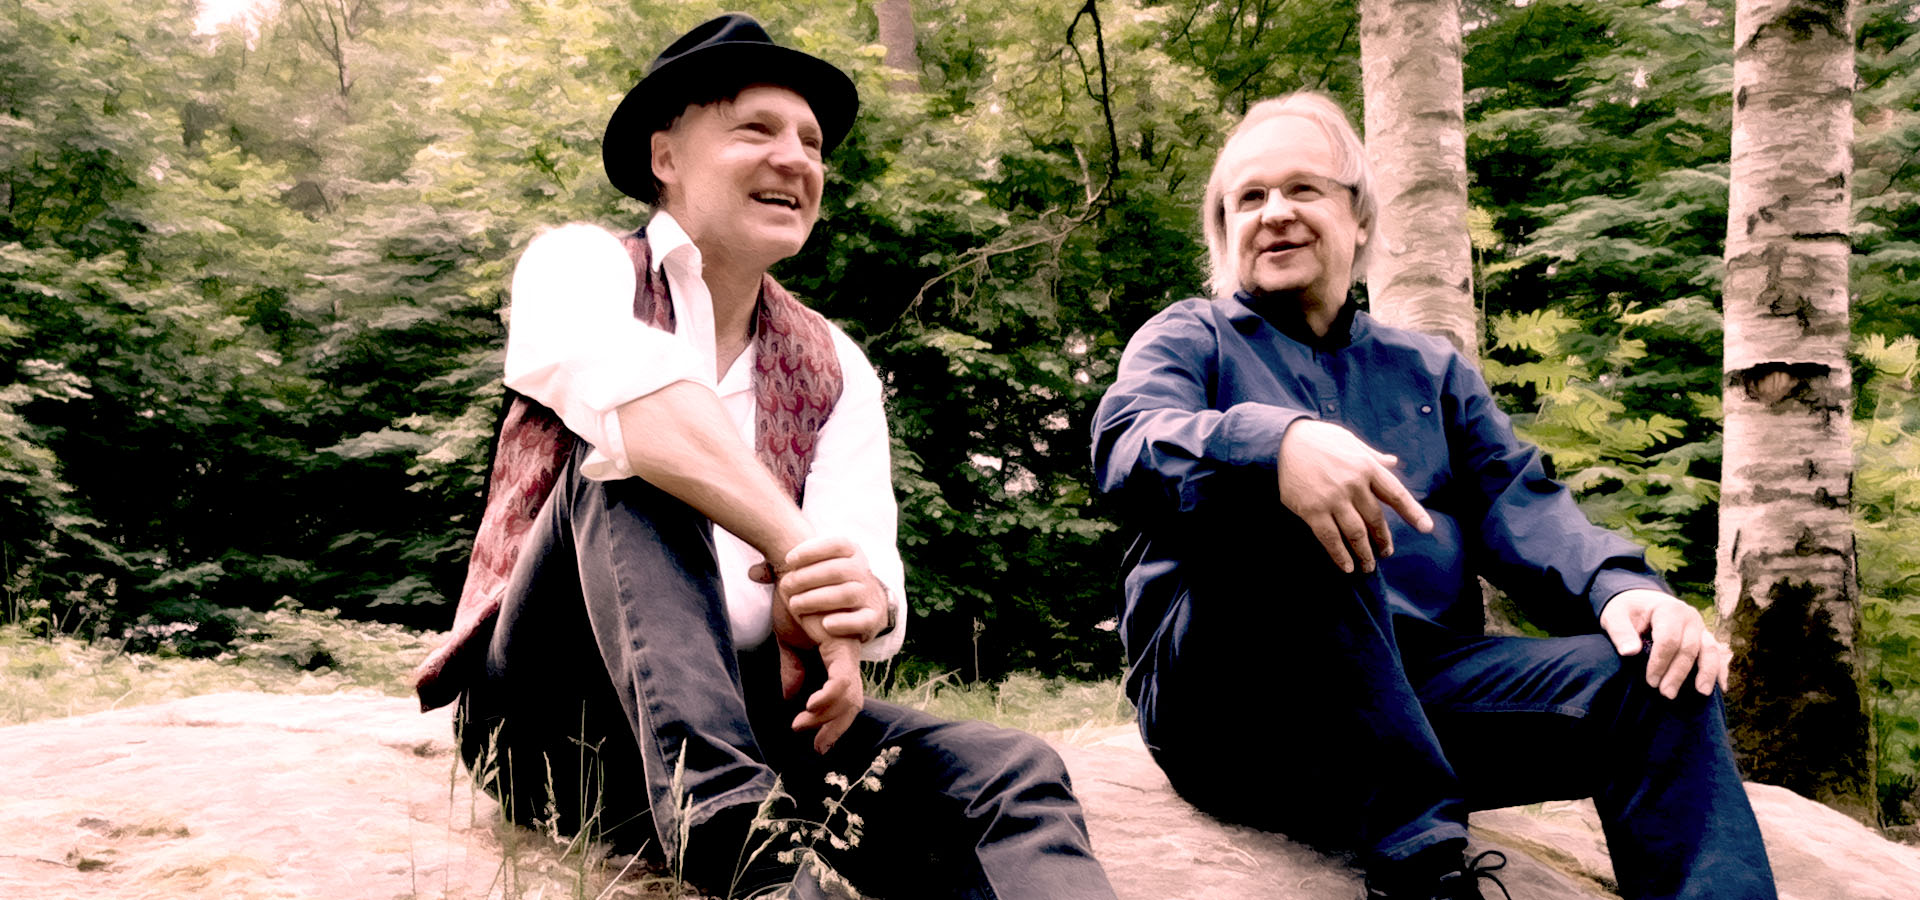 Artisterna Lennart och Markku sitter avslappnat på en stenhäll med skog och gröna blad i bakgrunden. Lennart bär hatt och väst, Markku i mörkblå skjorta. 